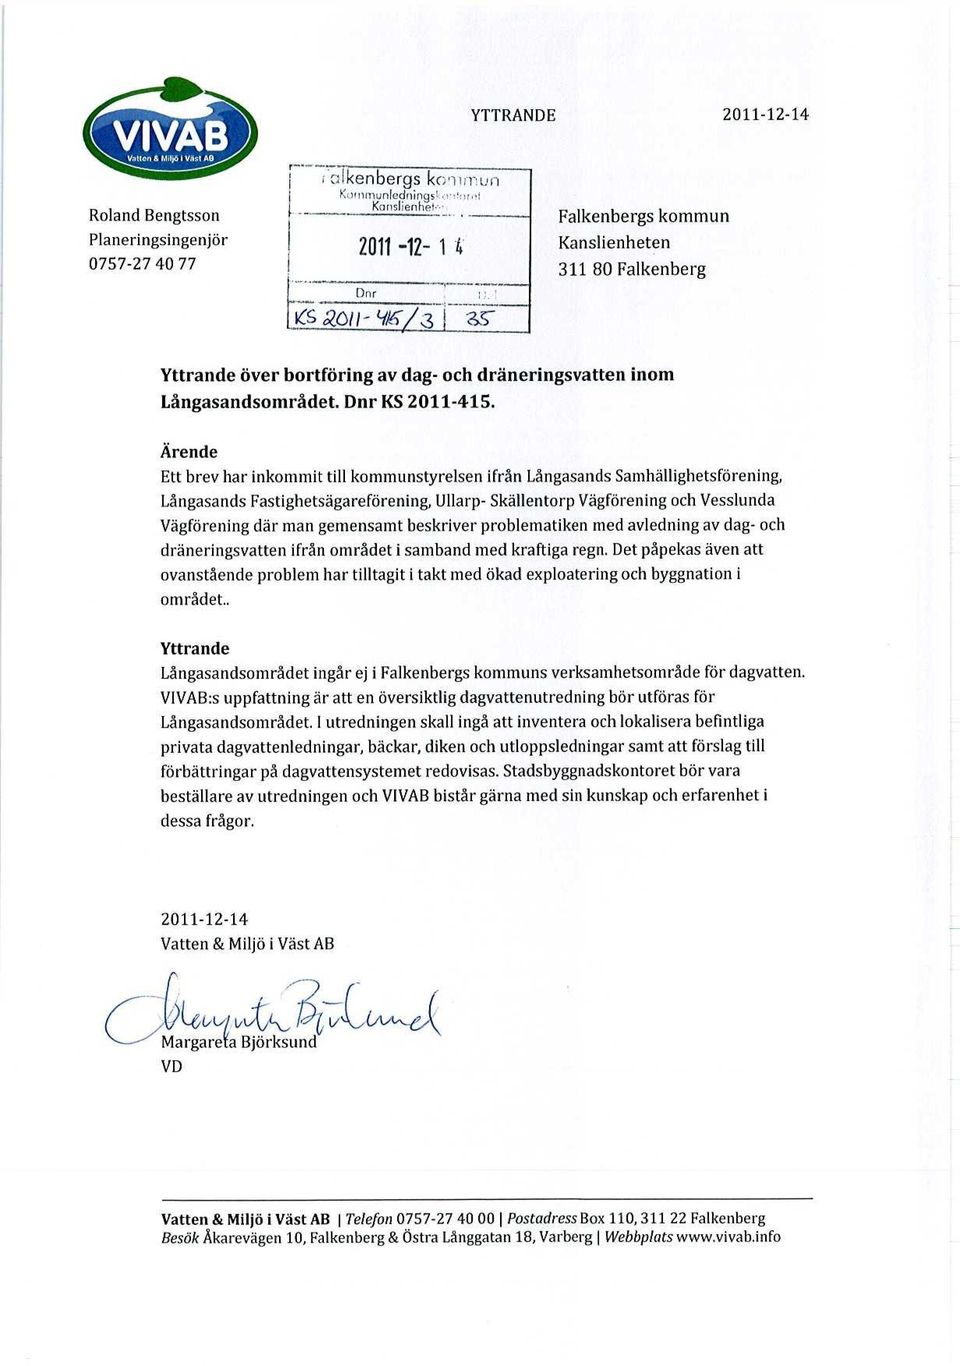 Ärende Ett brev har inkommit till kommunstyrelsen ifrån Långasands Samhällighetsförening, Långasands Fastighetsägareförening, Ullarp- Skällentorp Vägförening och Vesslunda Vägförening där man